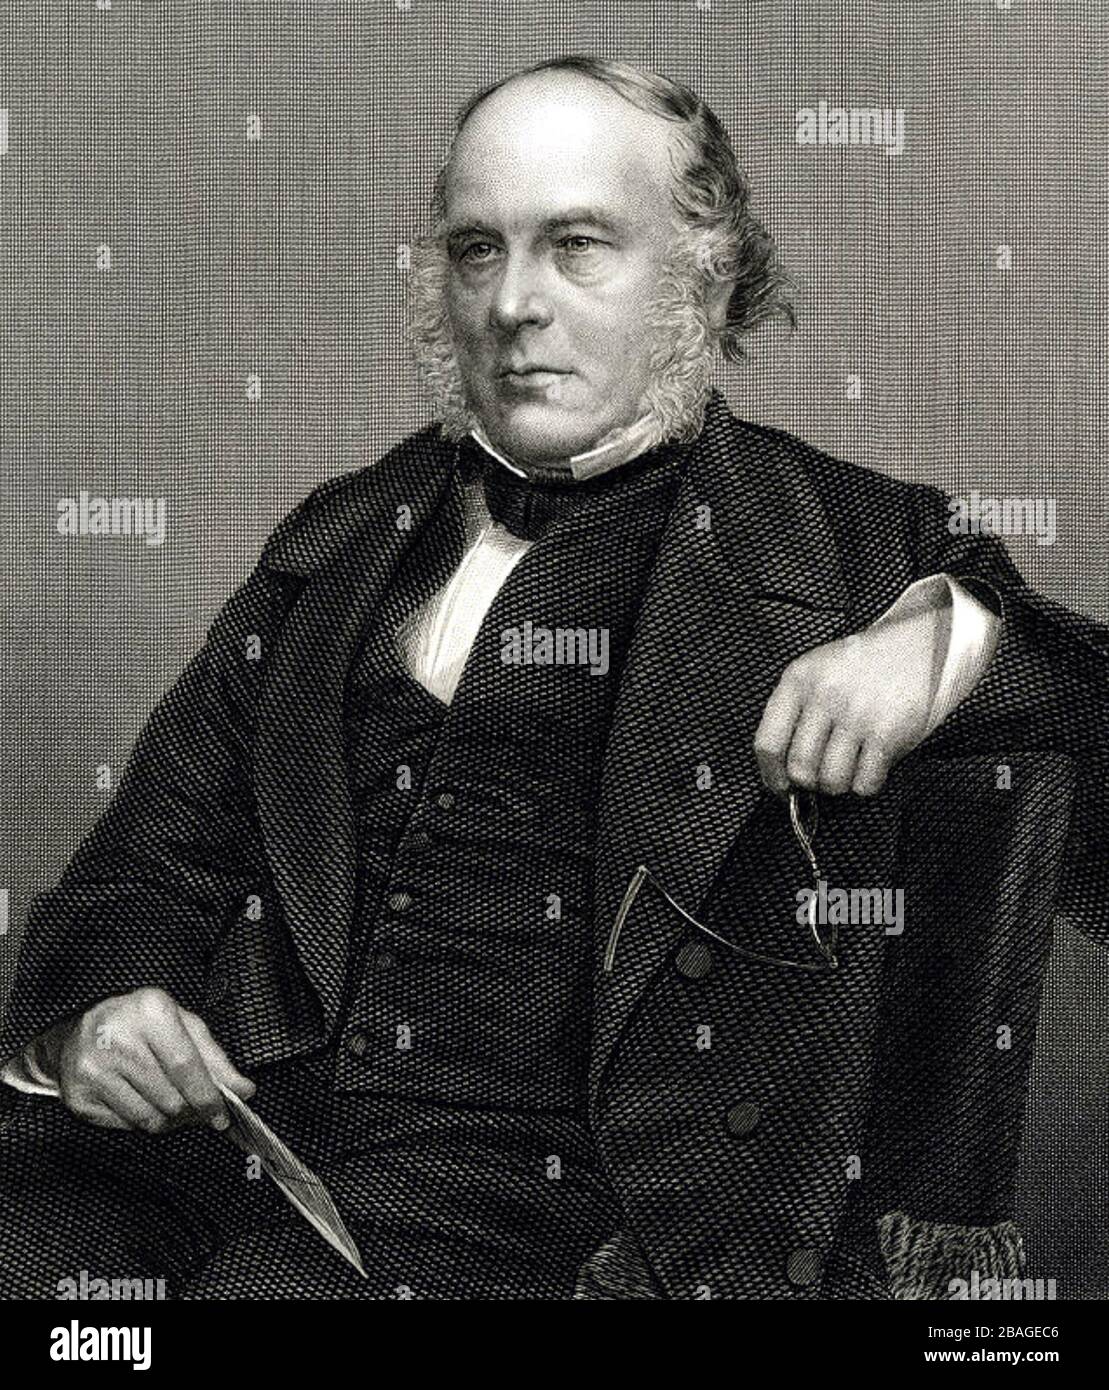 ROWLAND HILL (1795-1879) Profesor, inventor, reformador del sistema postal Foto de stock